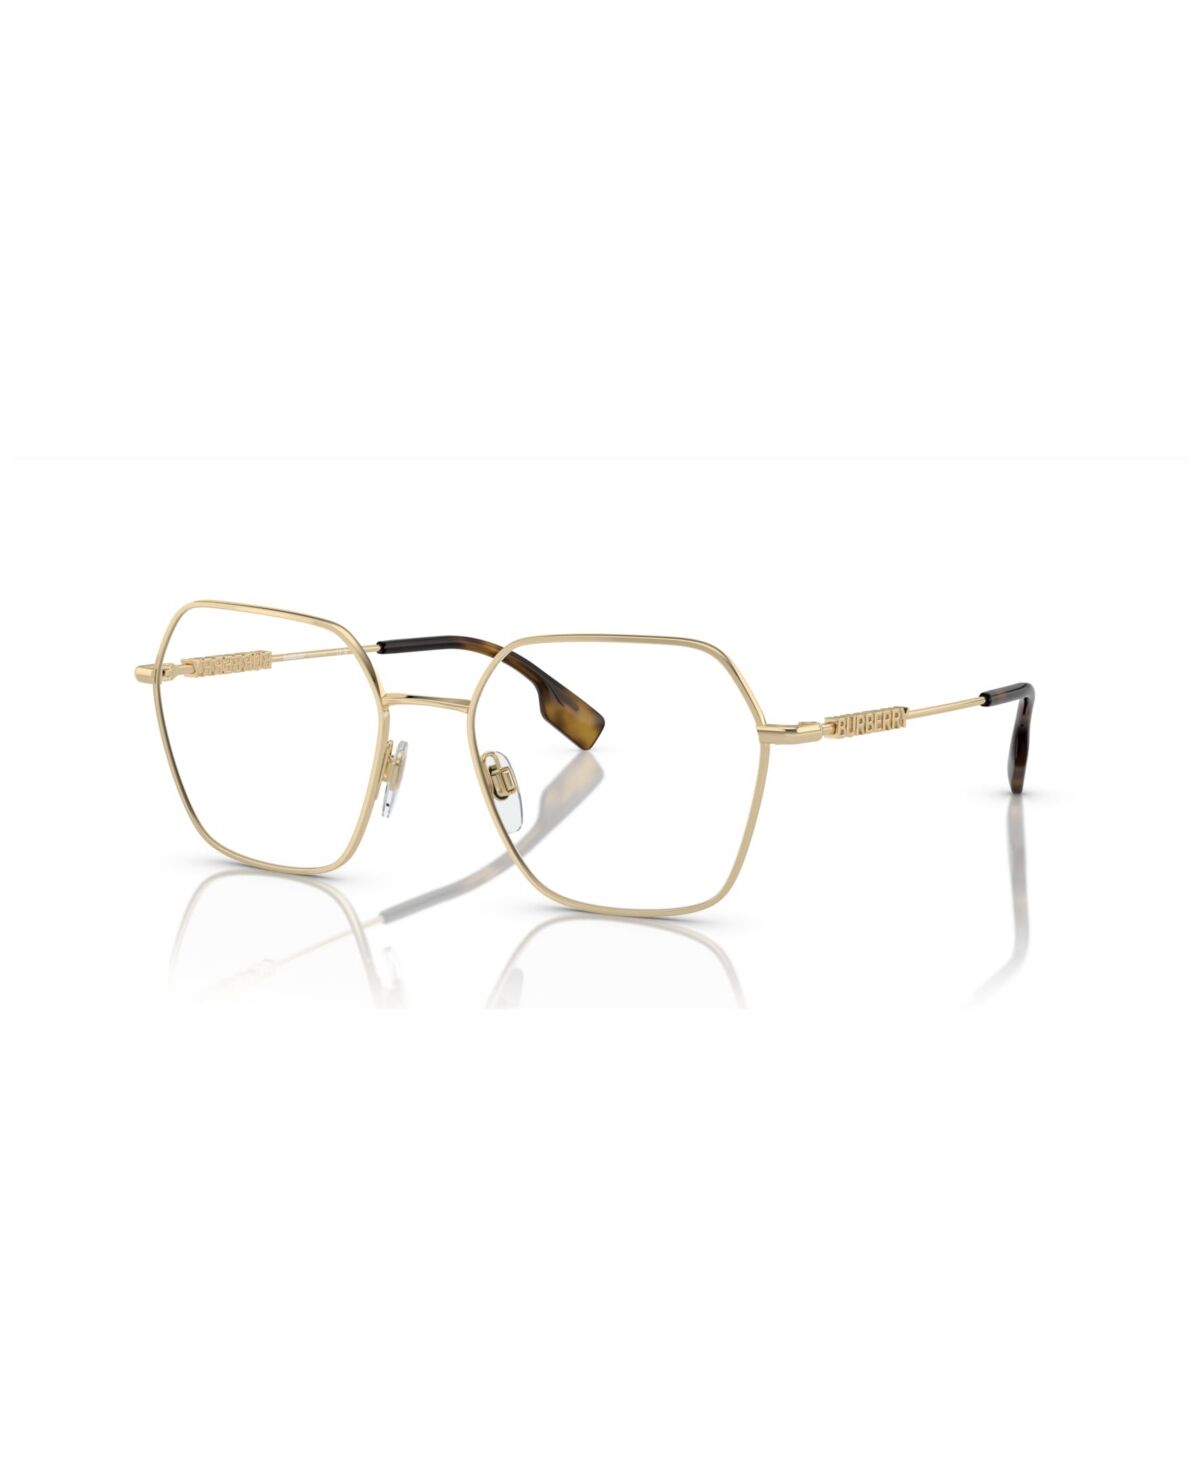 Burberry Women's Eyeglasses, BE1381 - Light Gold